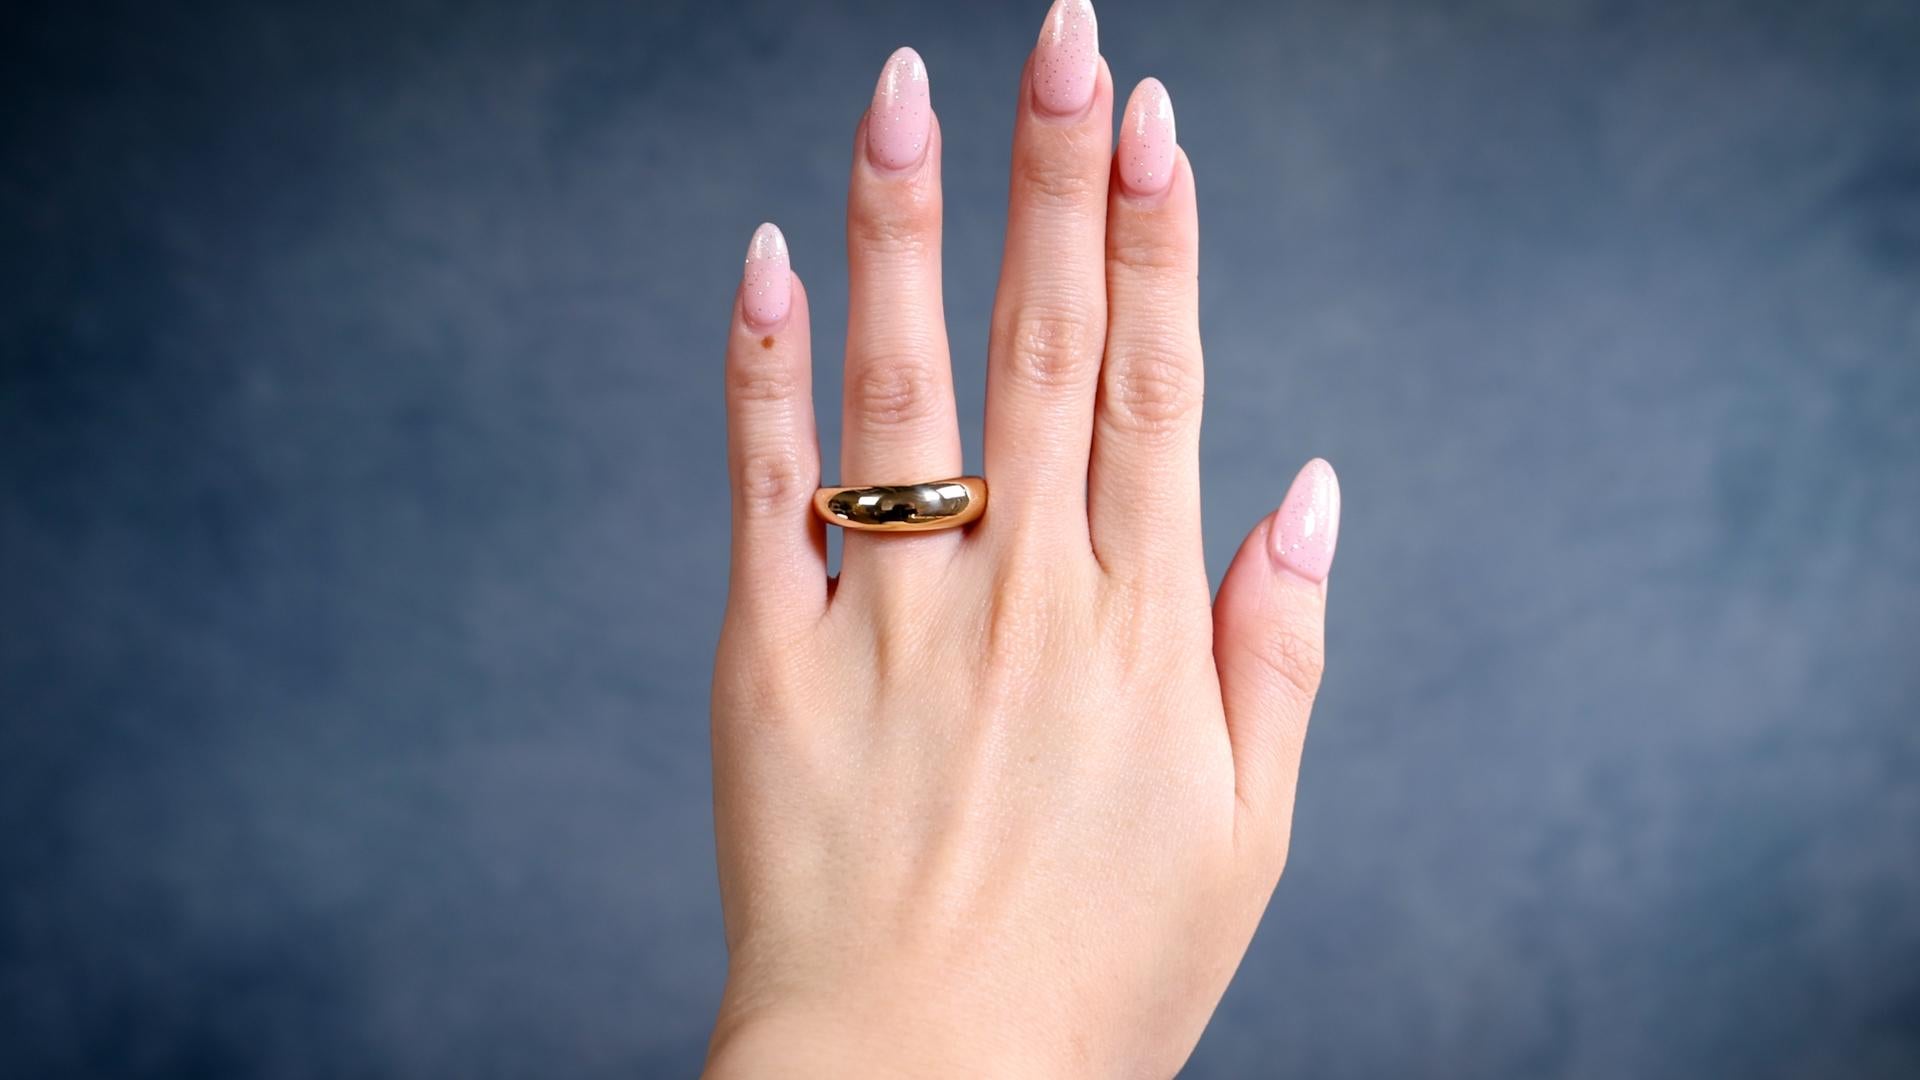 Ein Vintage Chaumet 18k Gelbgold Anneau Kuppel Ring. Gefertigt aus 18 Karat Gelbgold, signiert Chaumet Paris, Seriennummer 611728, mit französischen Feingehalts- und Punzierungszeichen, Gewicht 7,77 g. Circa 1990. Der Ring ist eine Größe 7 ¼ und